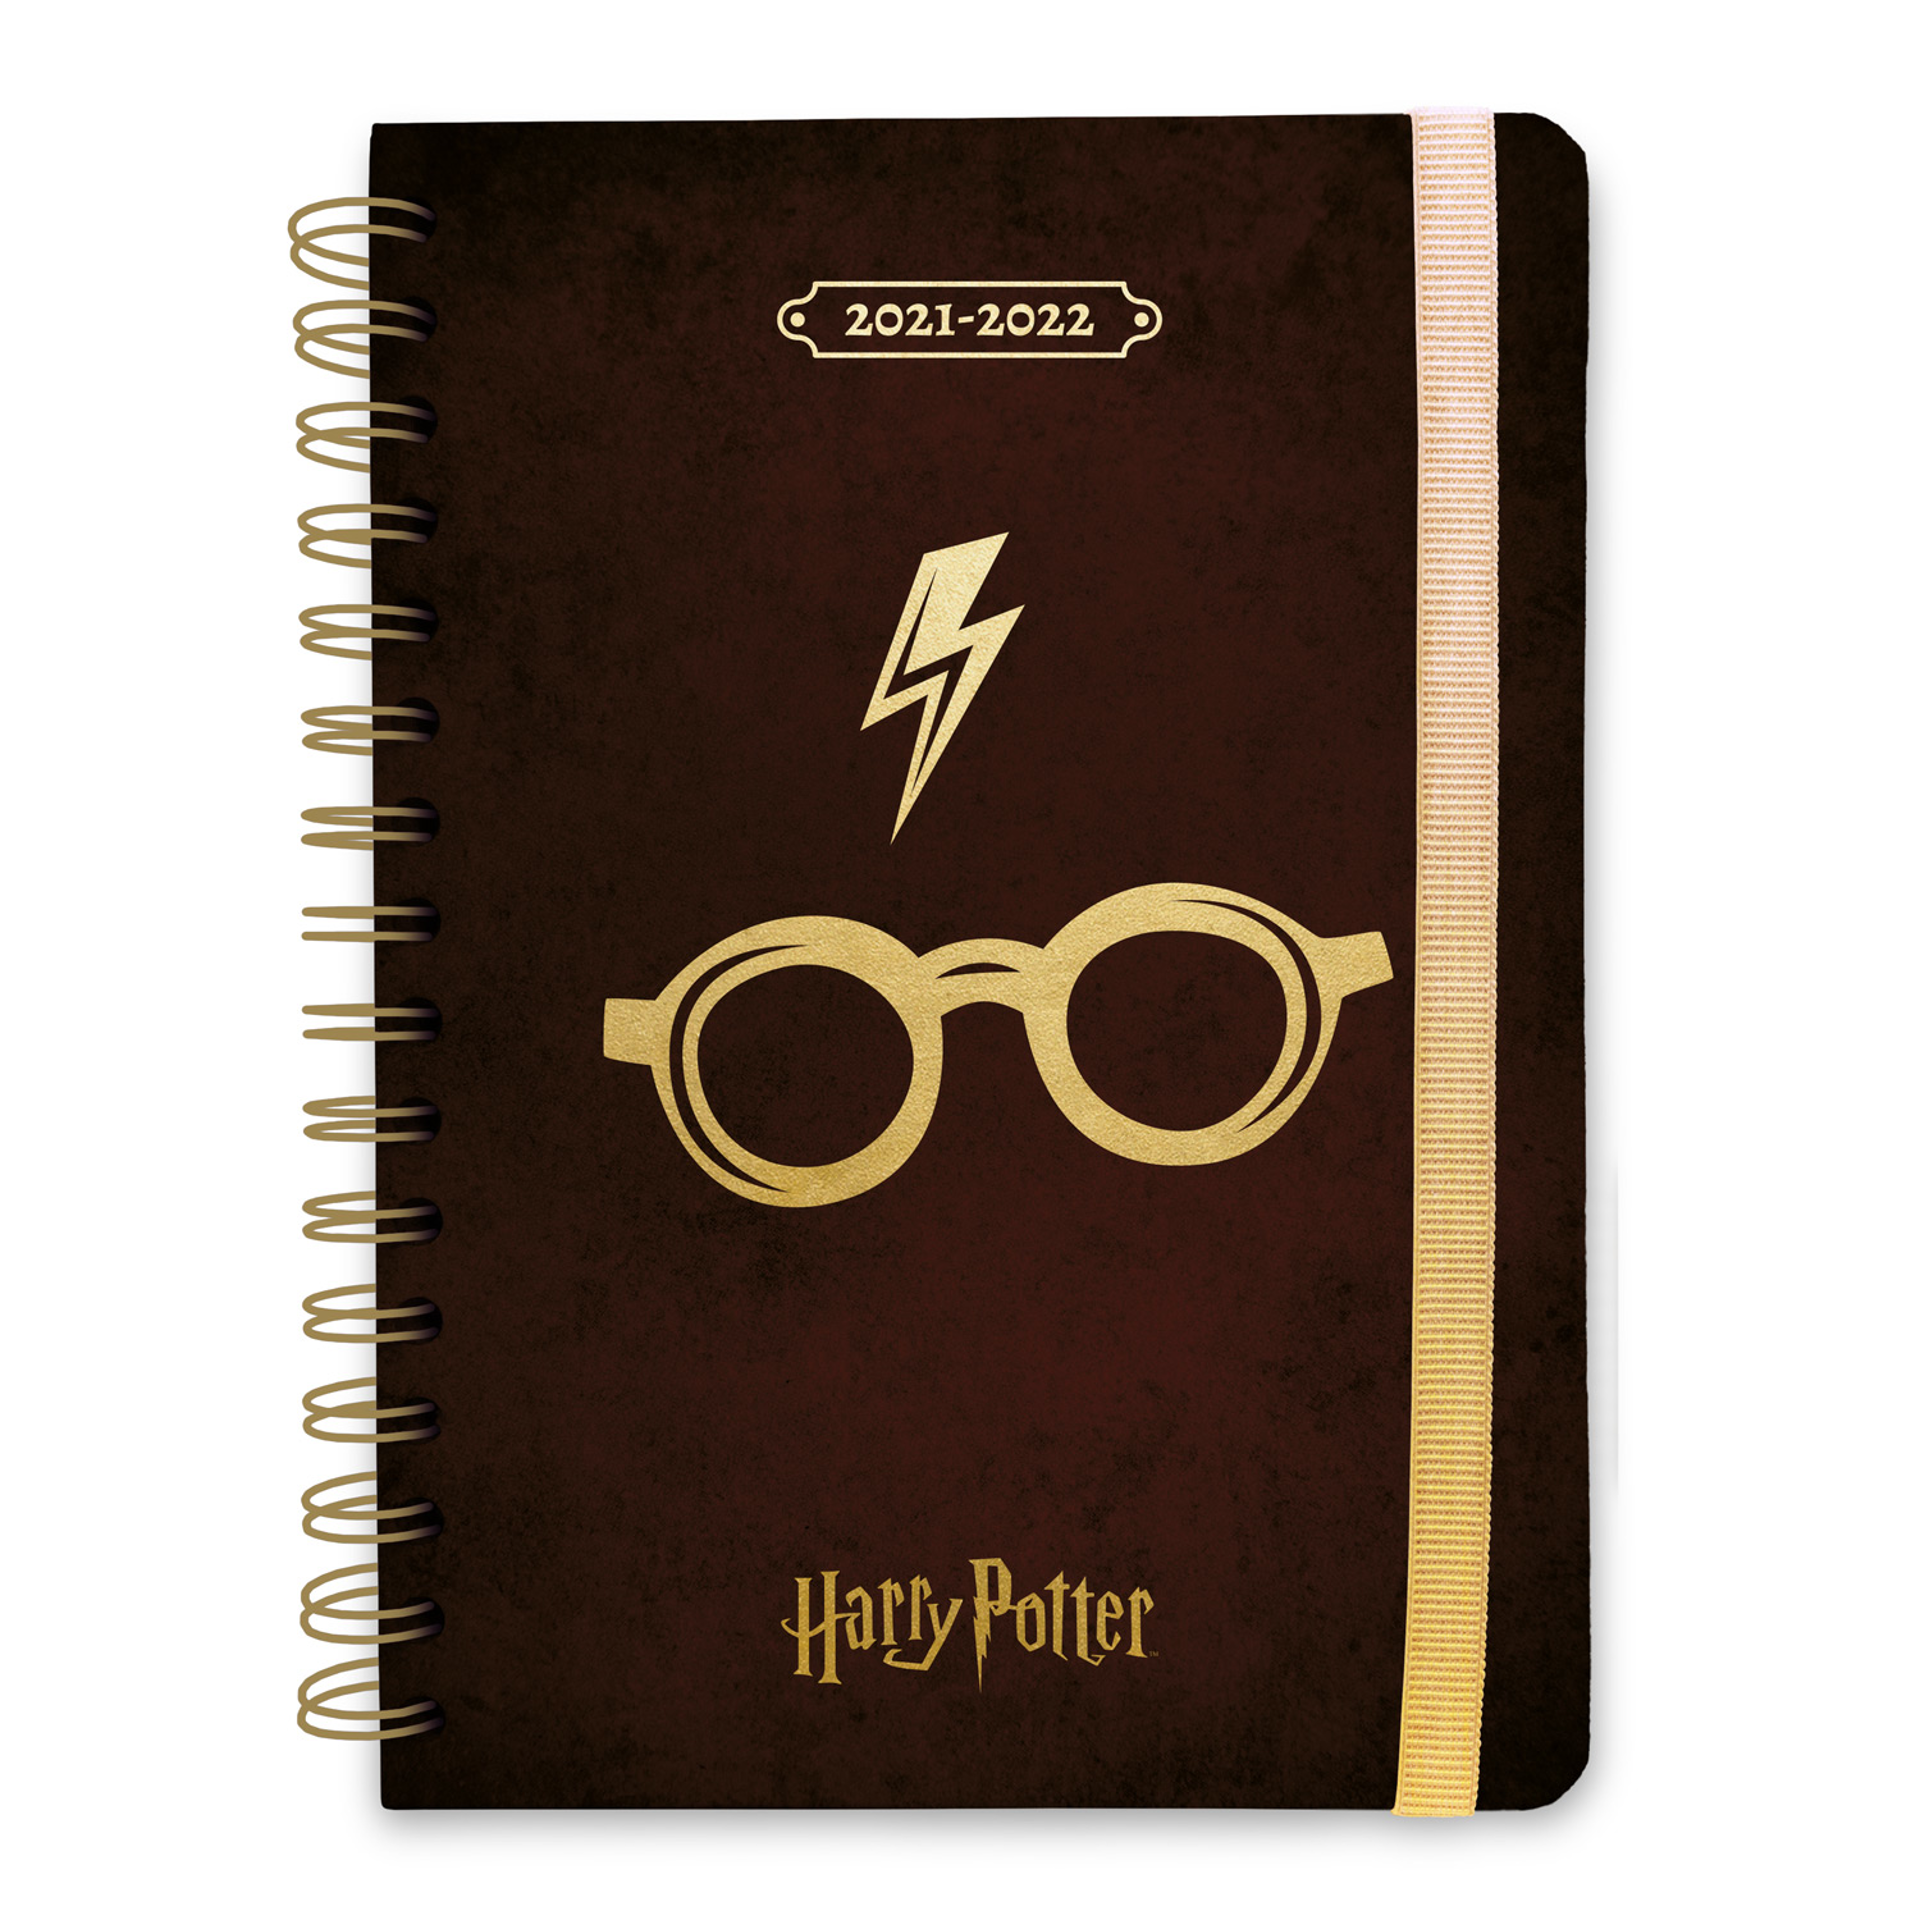 Harry Potter - Agenda académique A5 2021/2022 Lunettes d'Harry